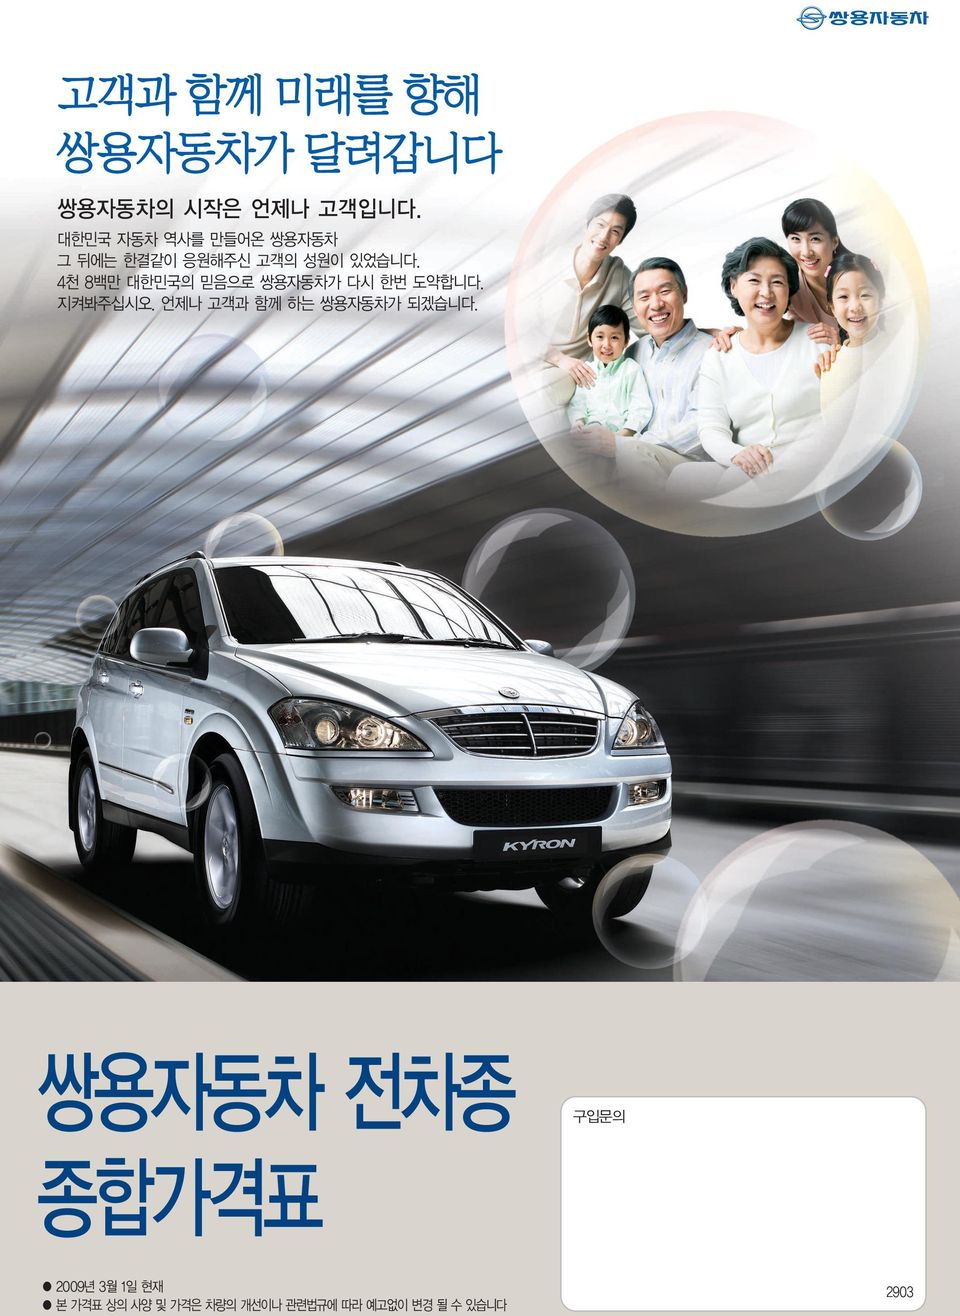 4천 8백만 대한민국의 믿음으로 쌍용자동차가 다시 한번 도약합니다. 지켜봐주십시오.